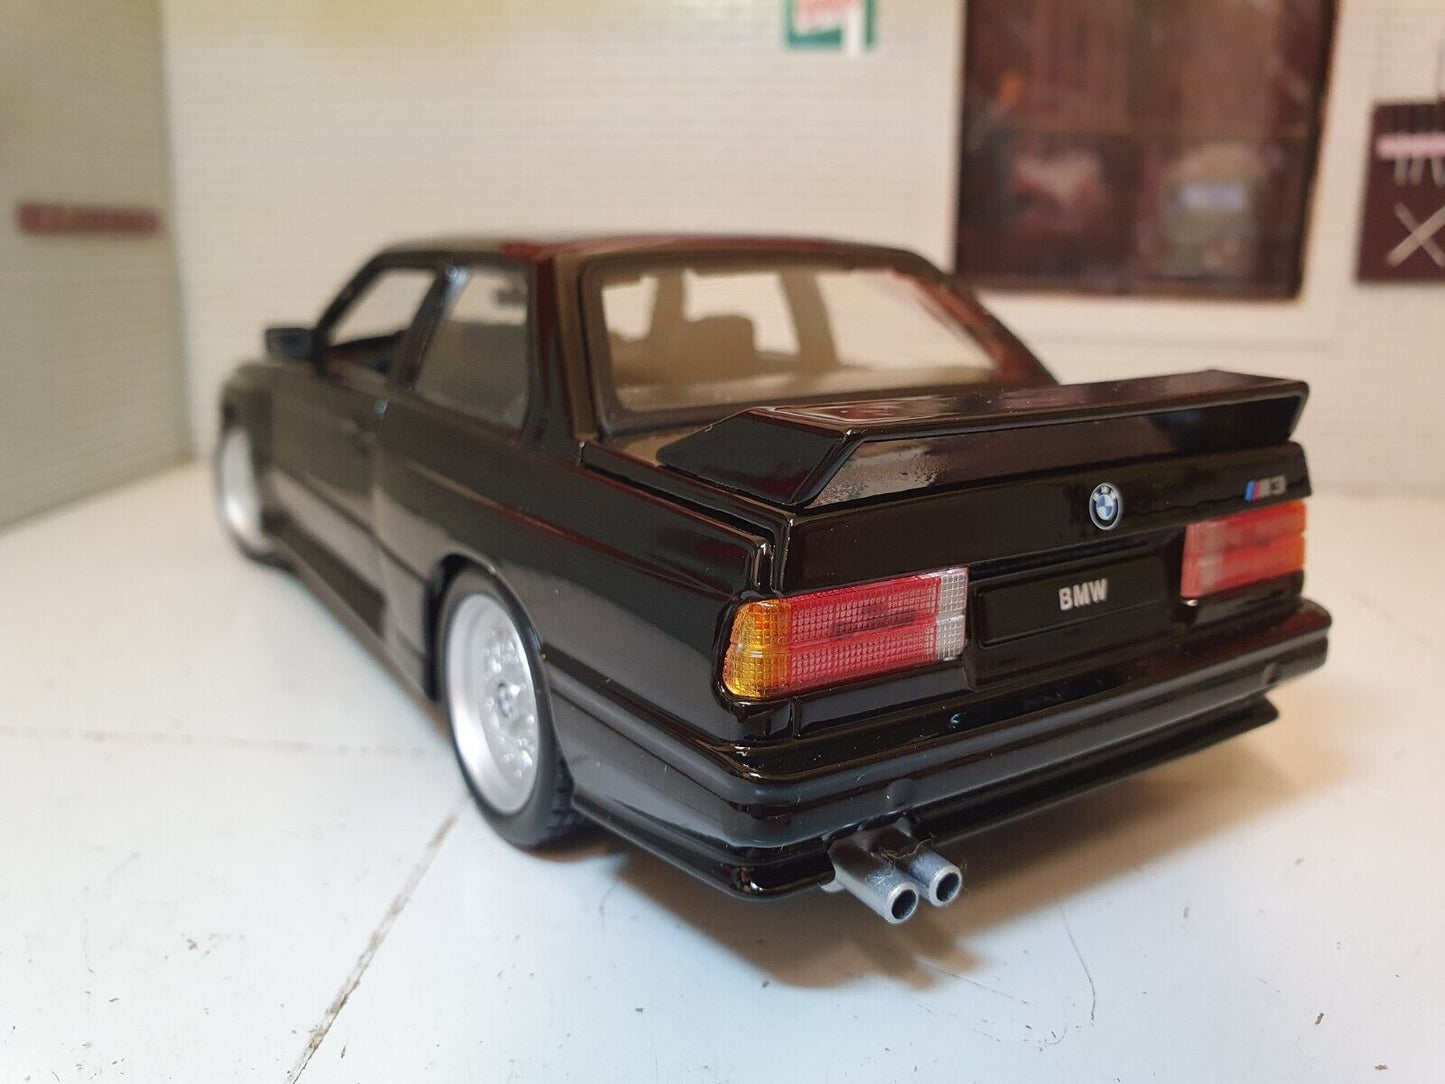 BMW 1988 M3 E30 3 Series 21100 Bburago 1:24